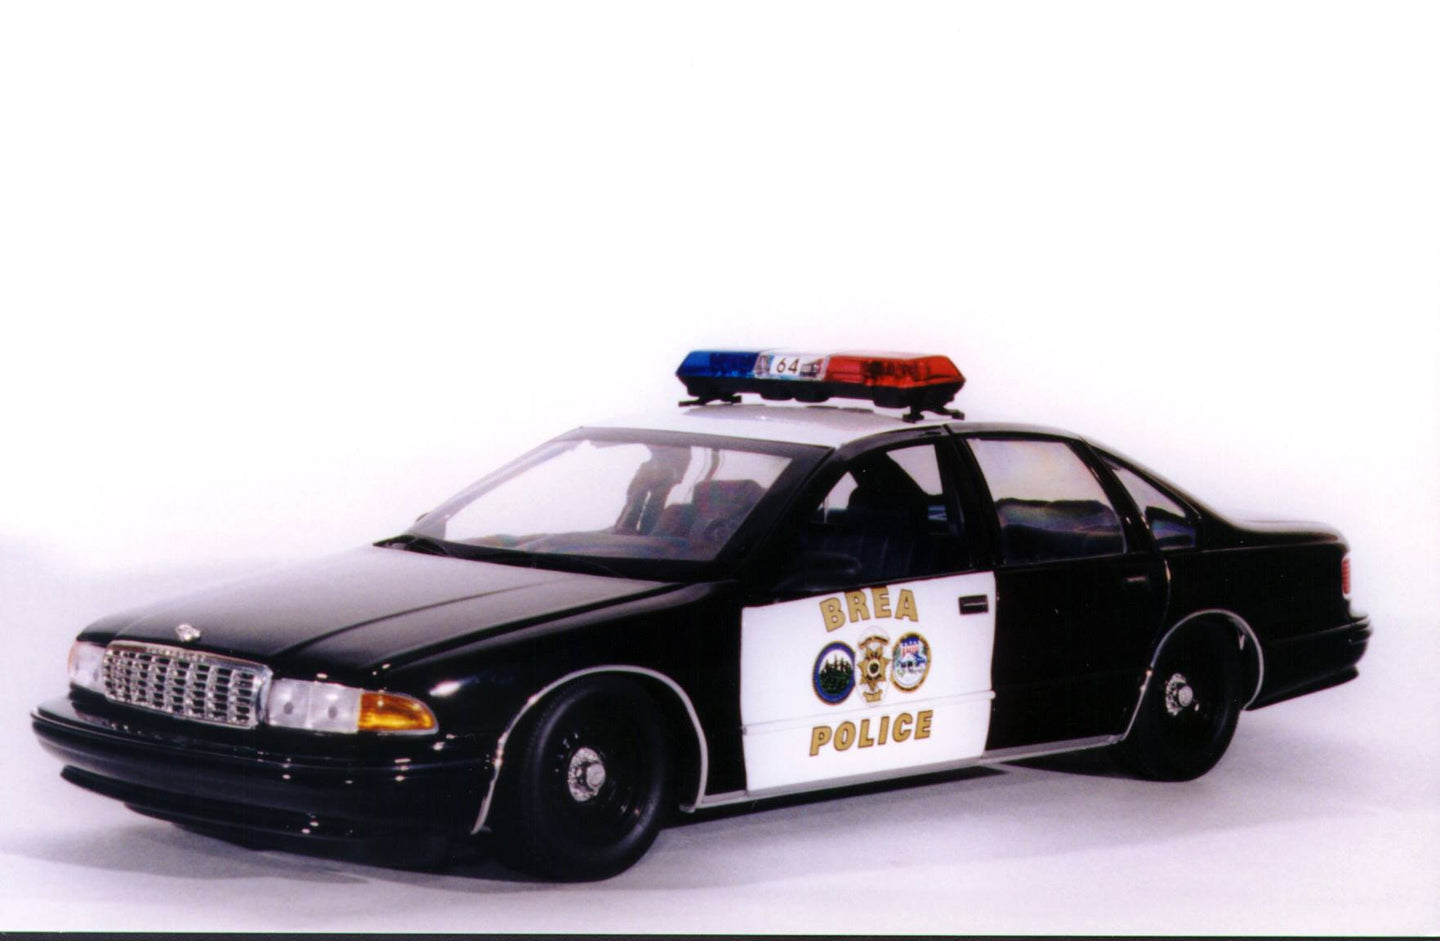 1:18 UT Models Chevy Caprice Brea, CA Police